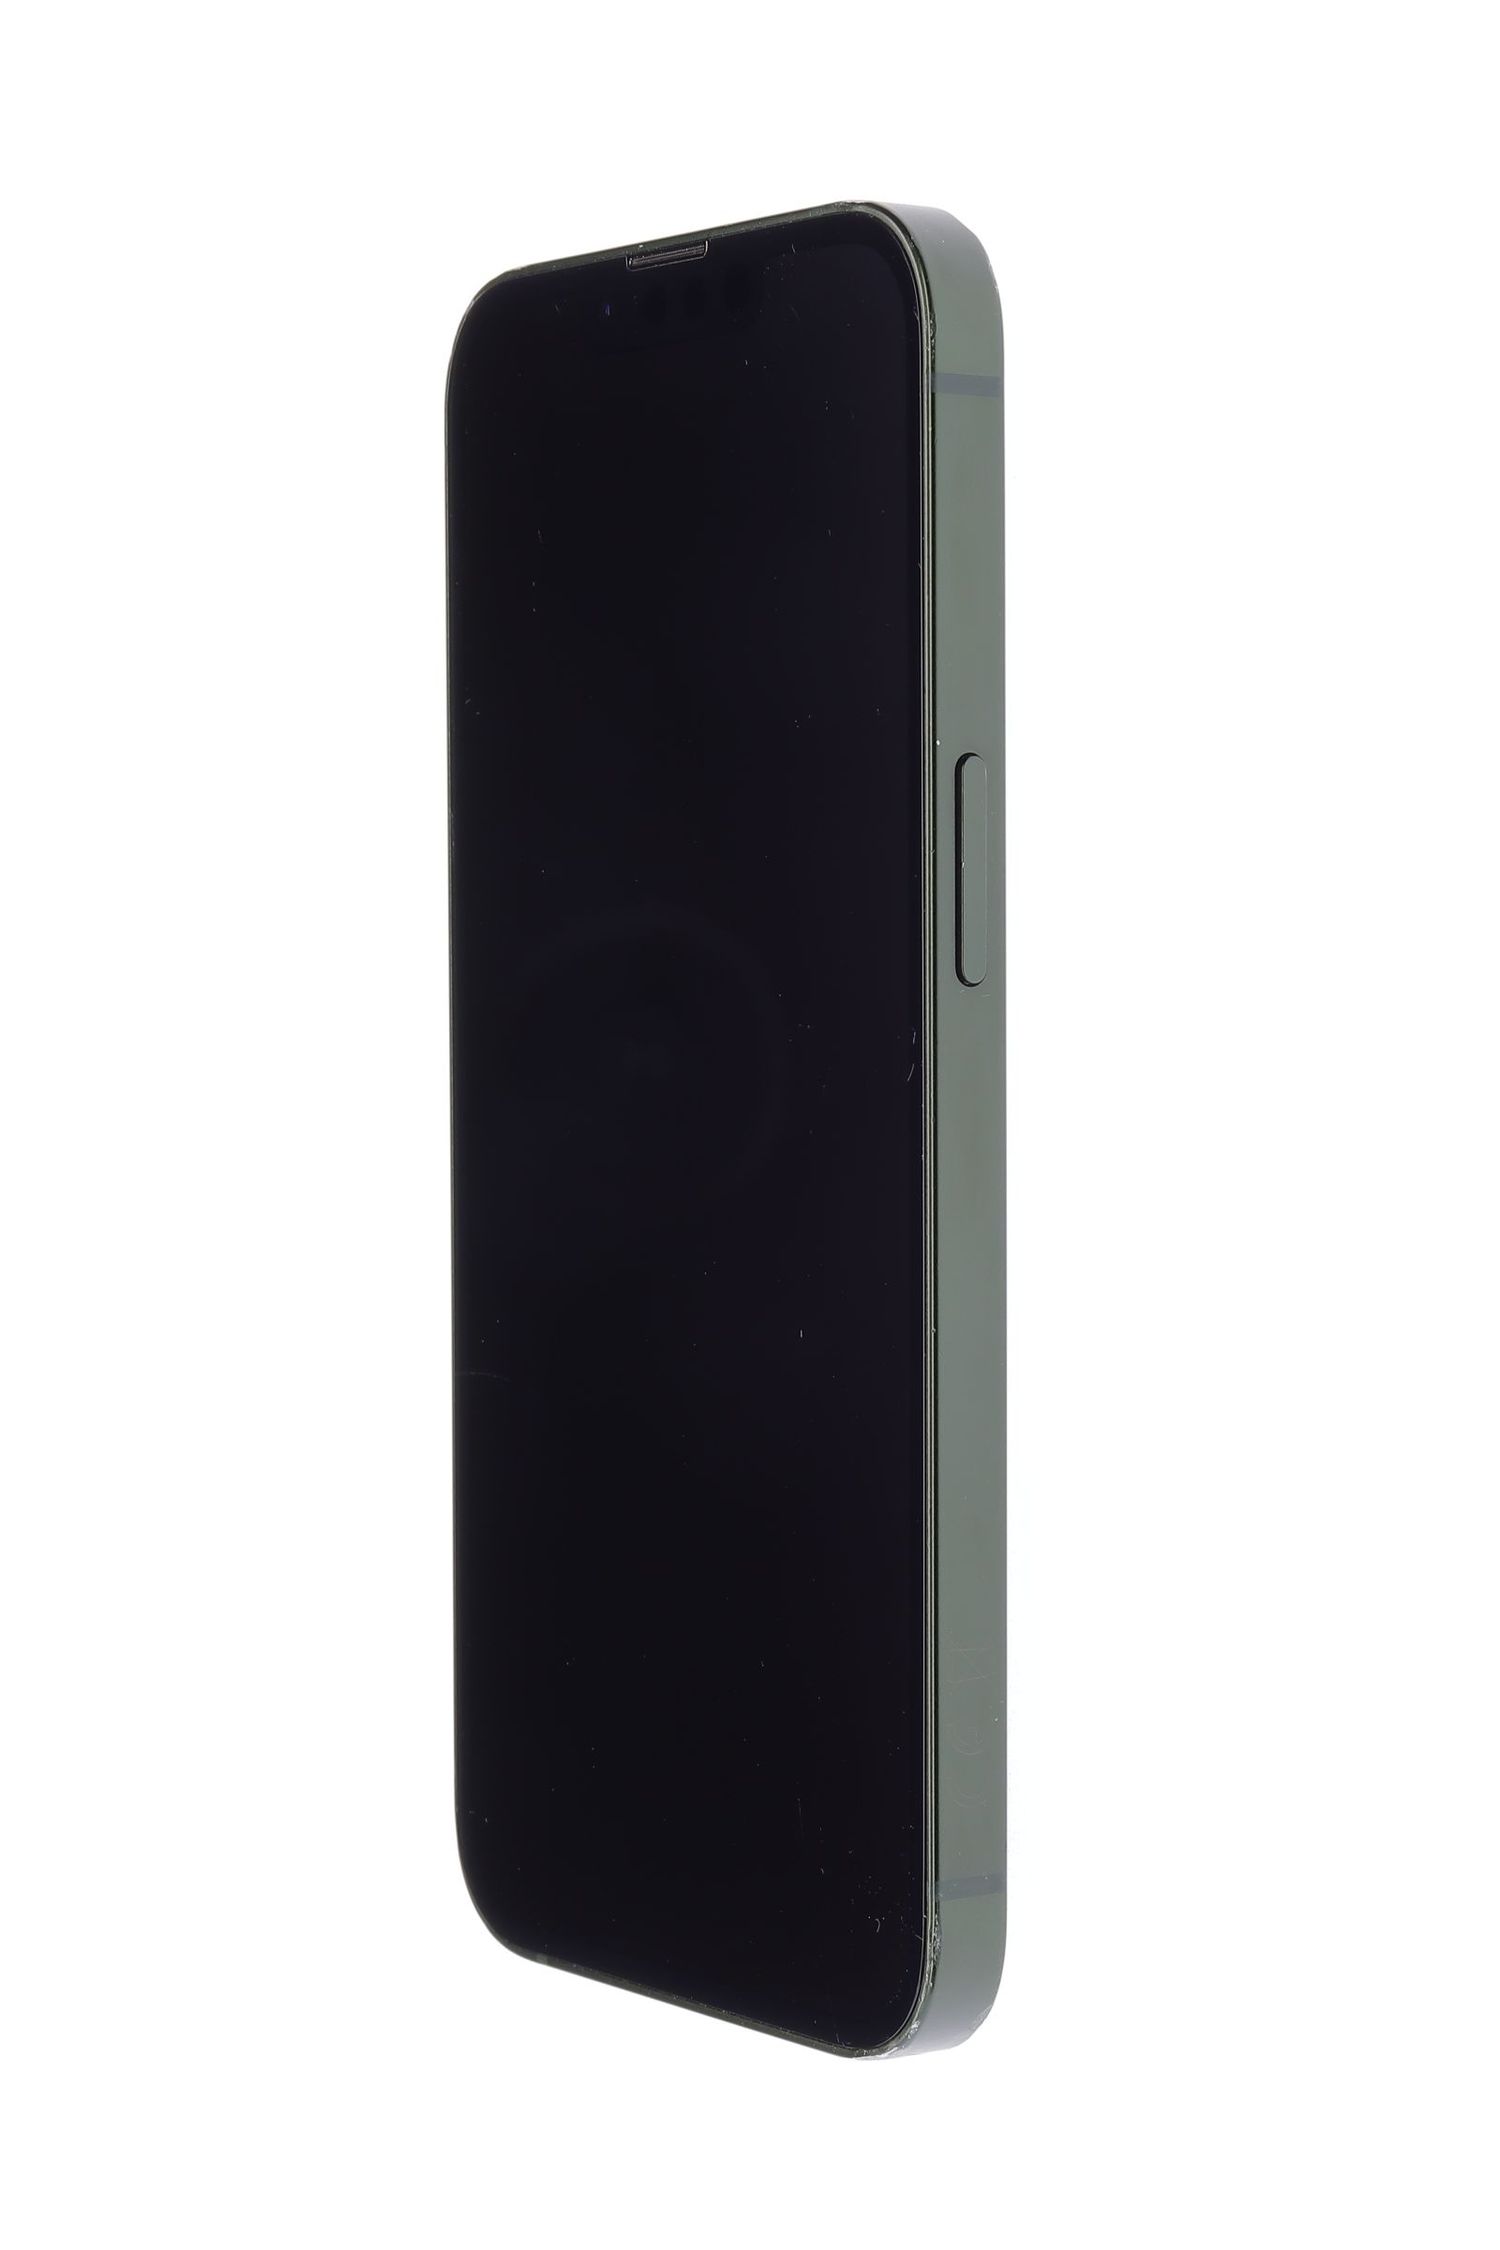 Κινητό τηλέφωνο Apple iPhone 13, Green, 256 GB, Foarte Bun